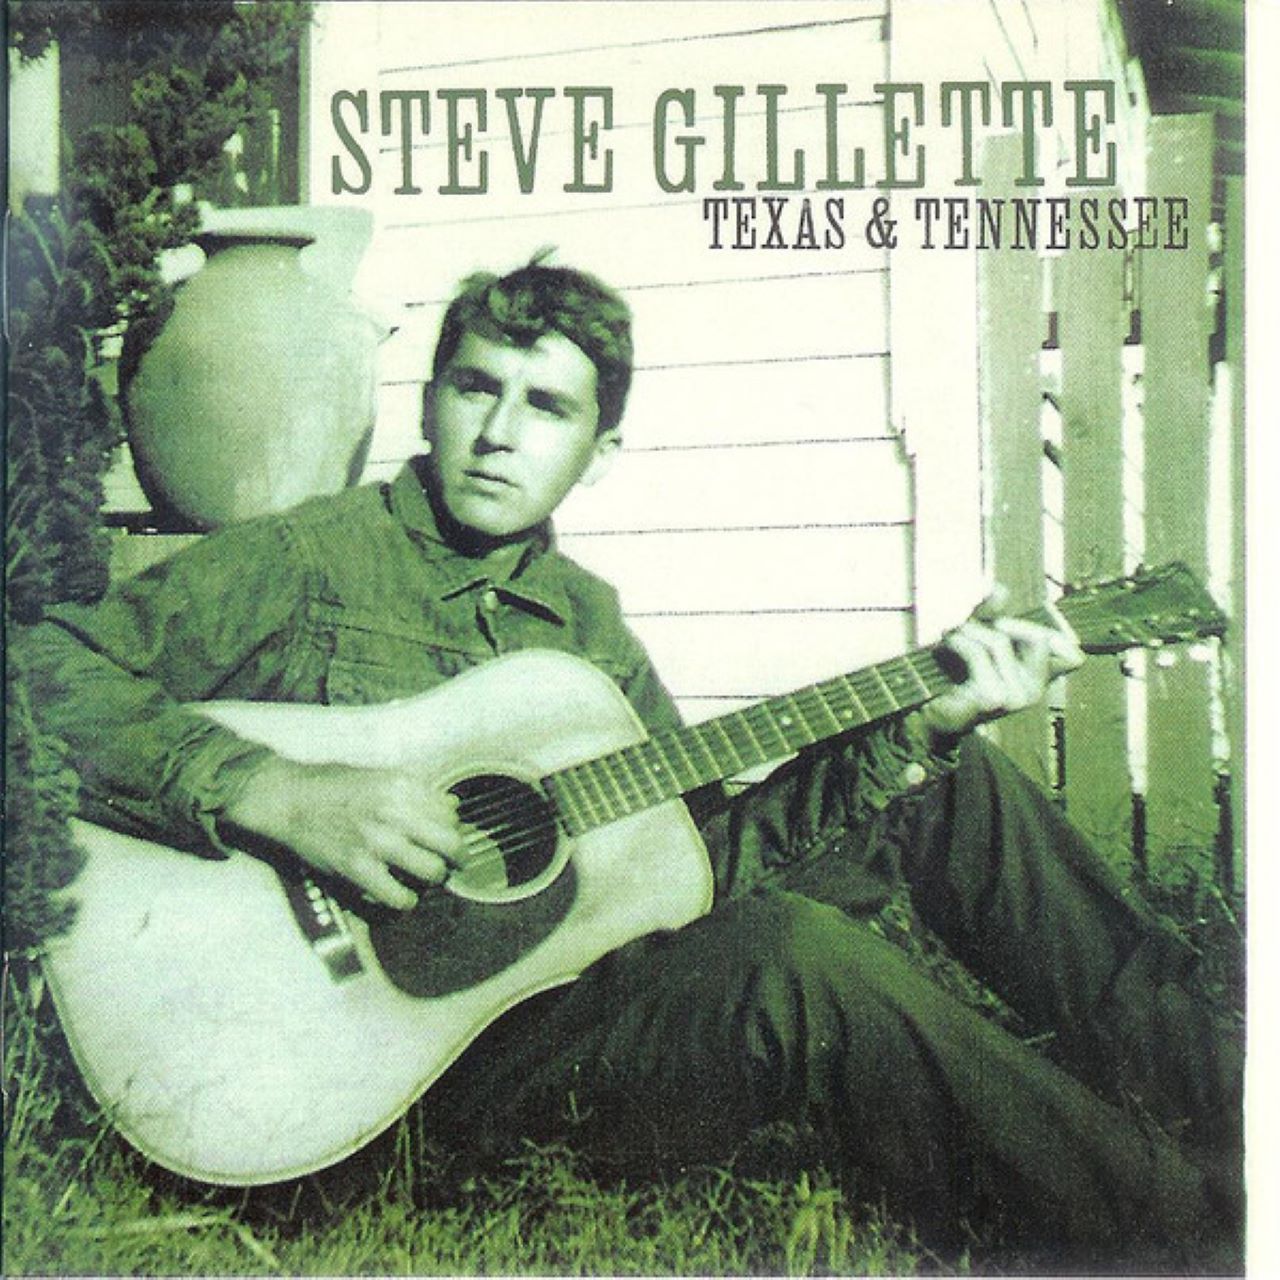 Steve Gillette - Texas & Tennessee cover album